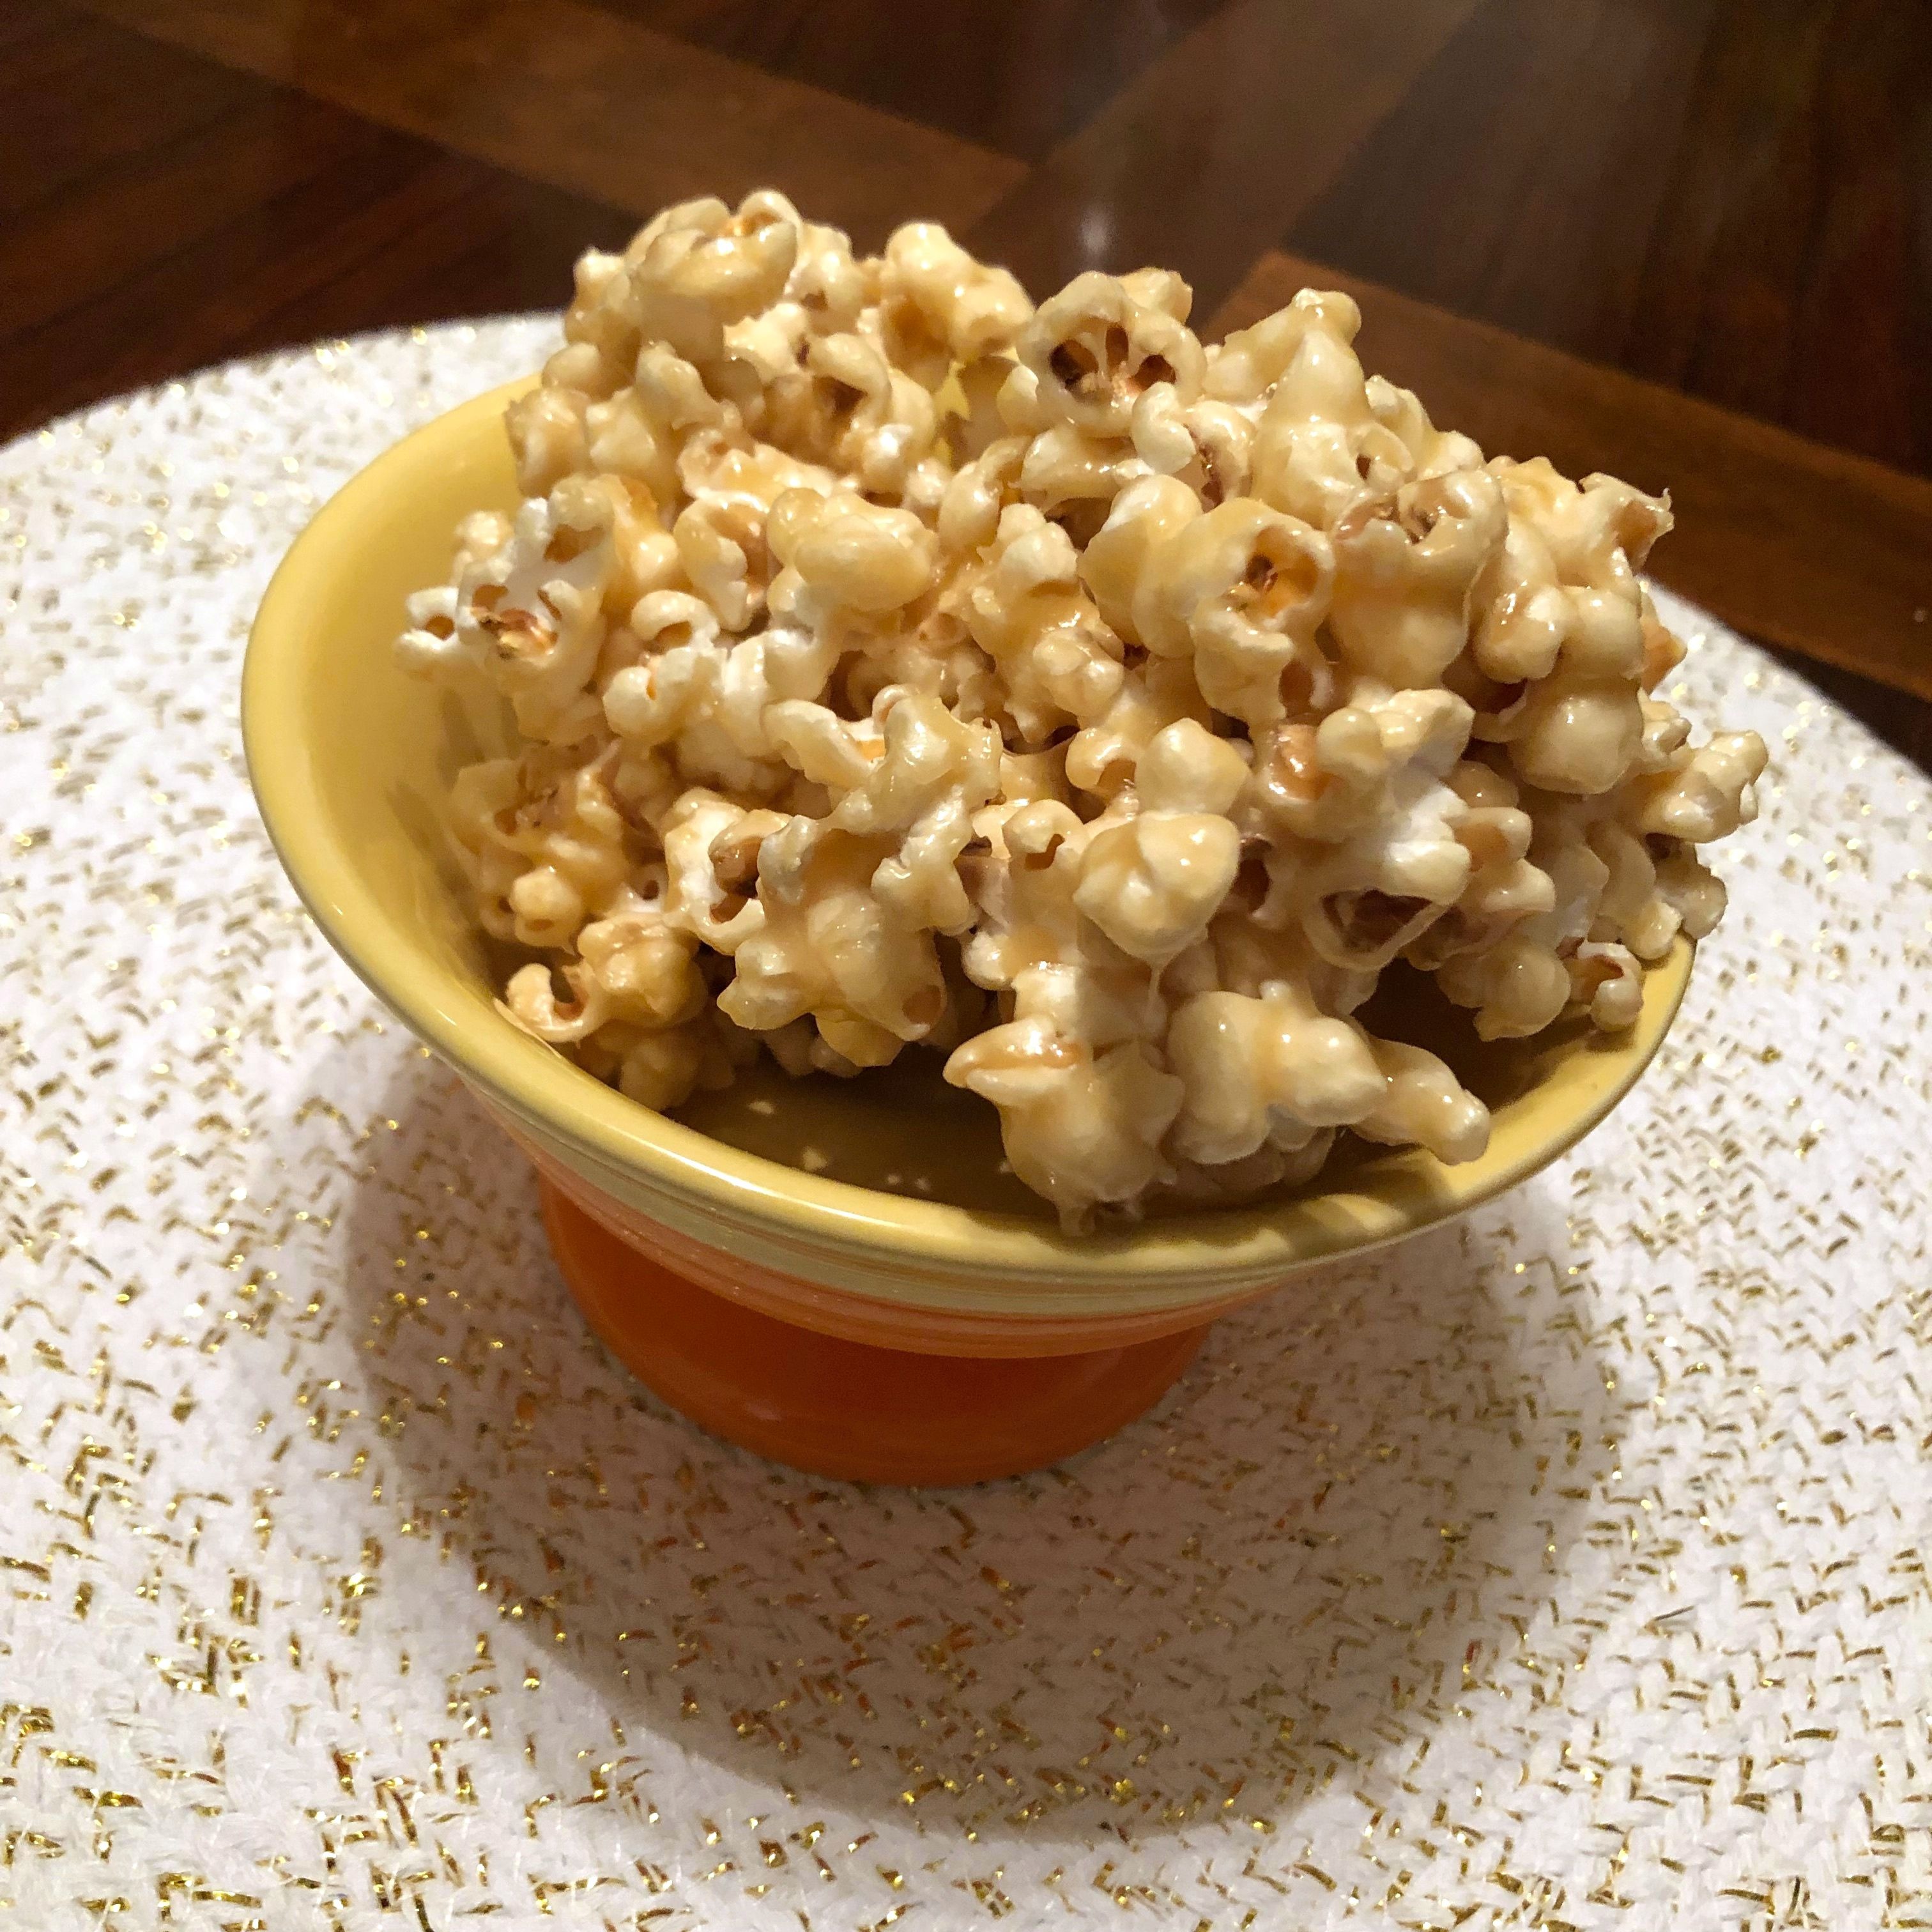 Vegan Caramel Popcorn